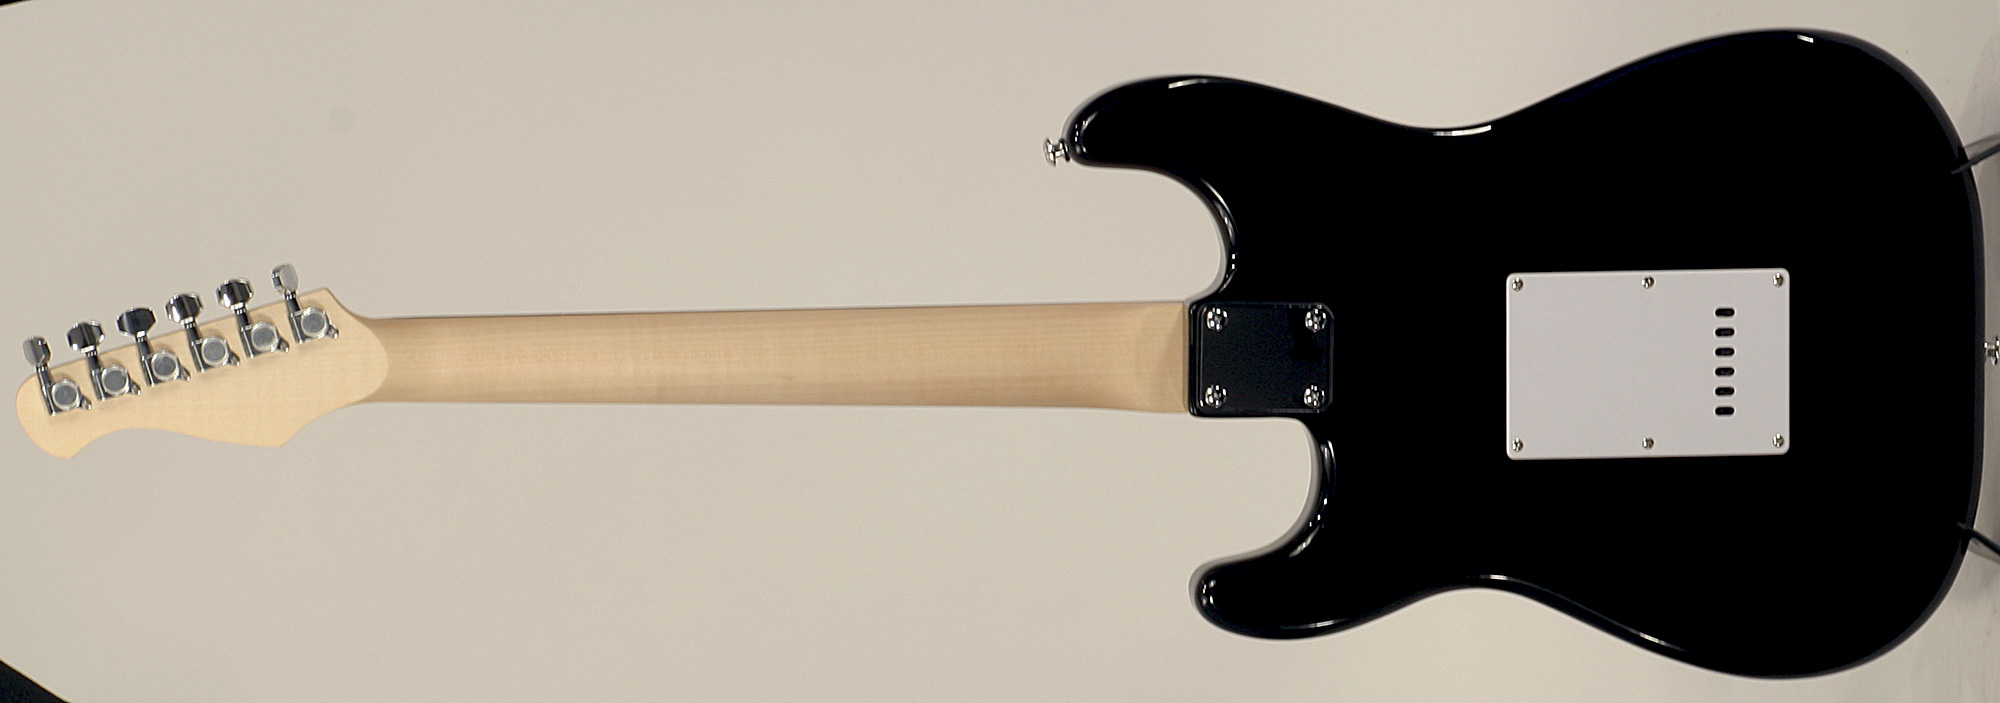 Eastone Str70-blk 3s Pur - Black - E-Gitarre in Str-Form - Variation 2